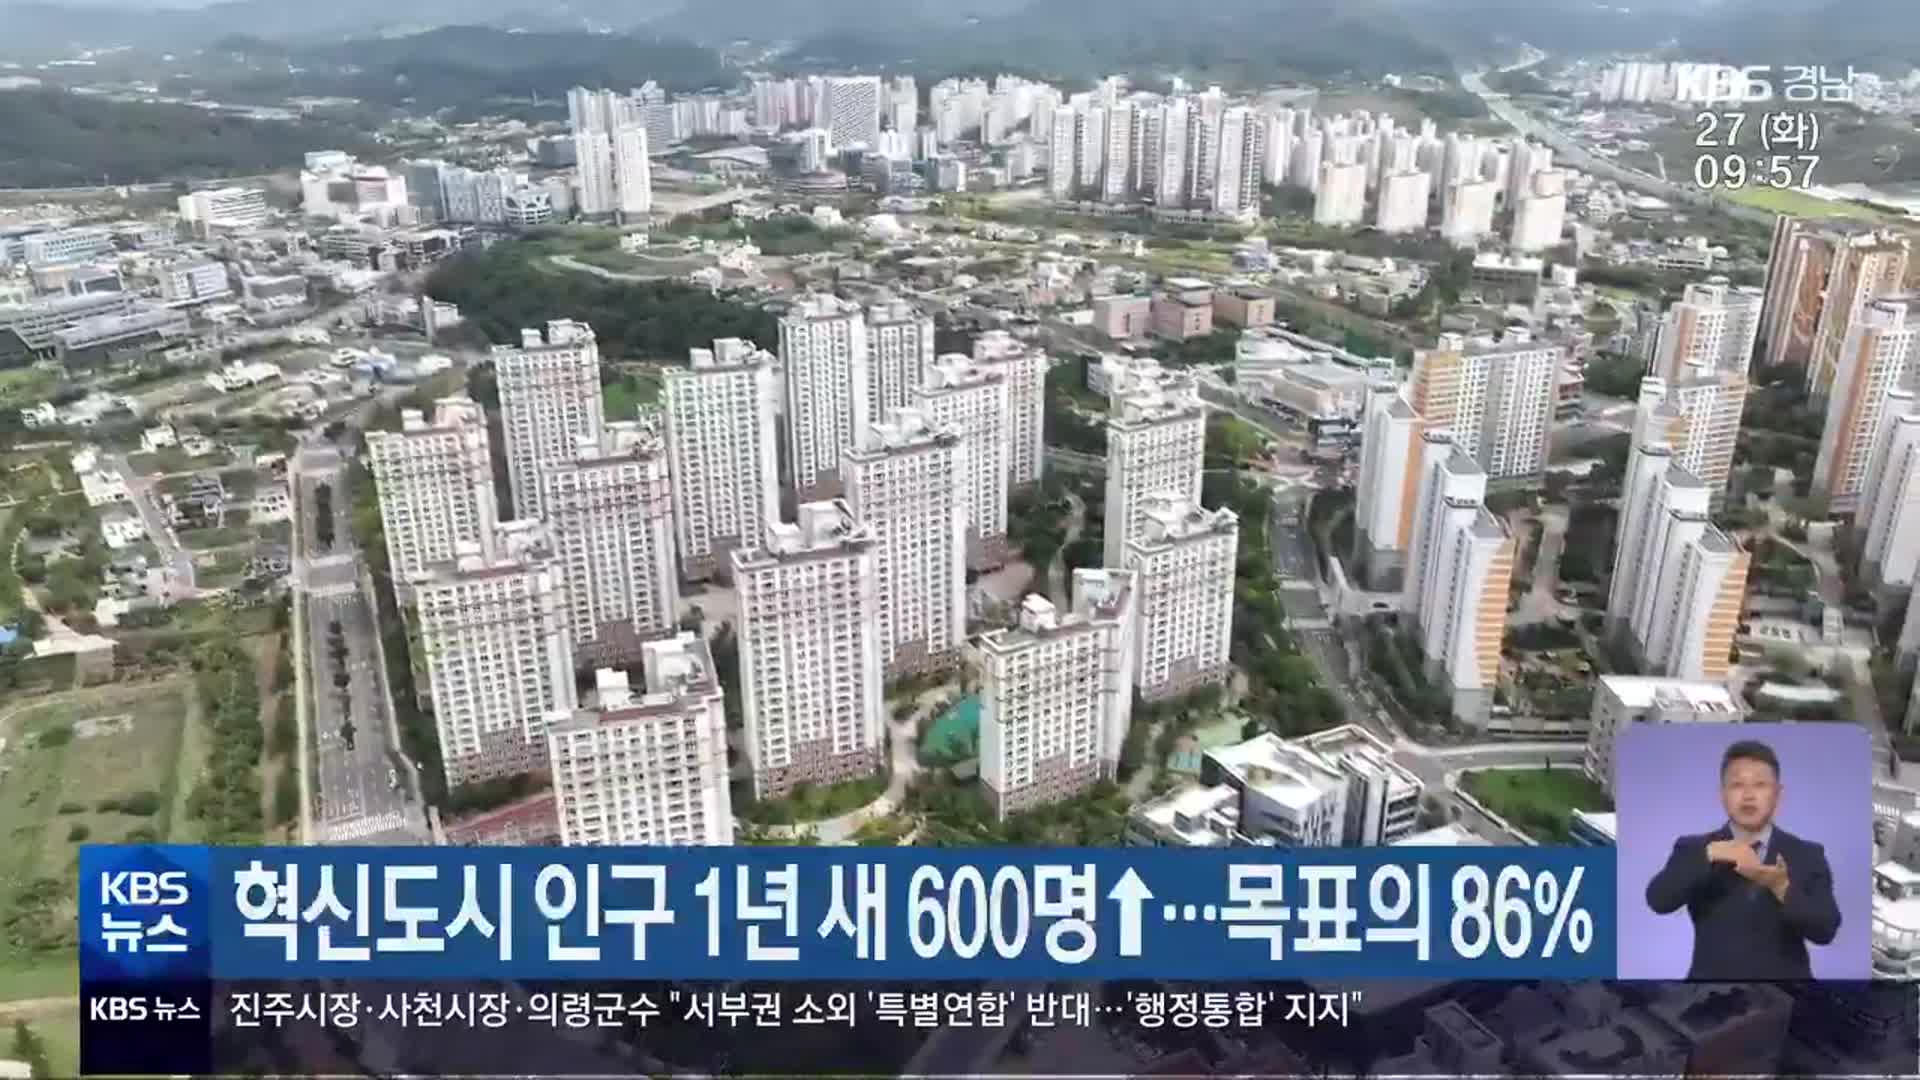 경남혁신도시 인구 1년 새 600명↑…목표의 86%